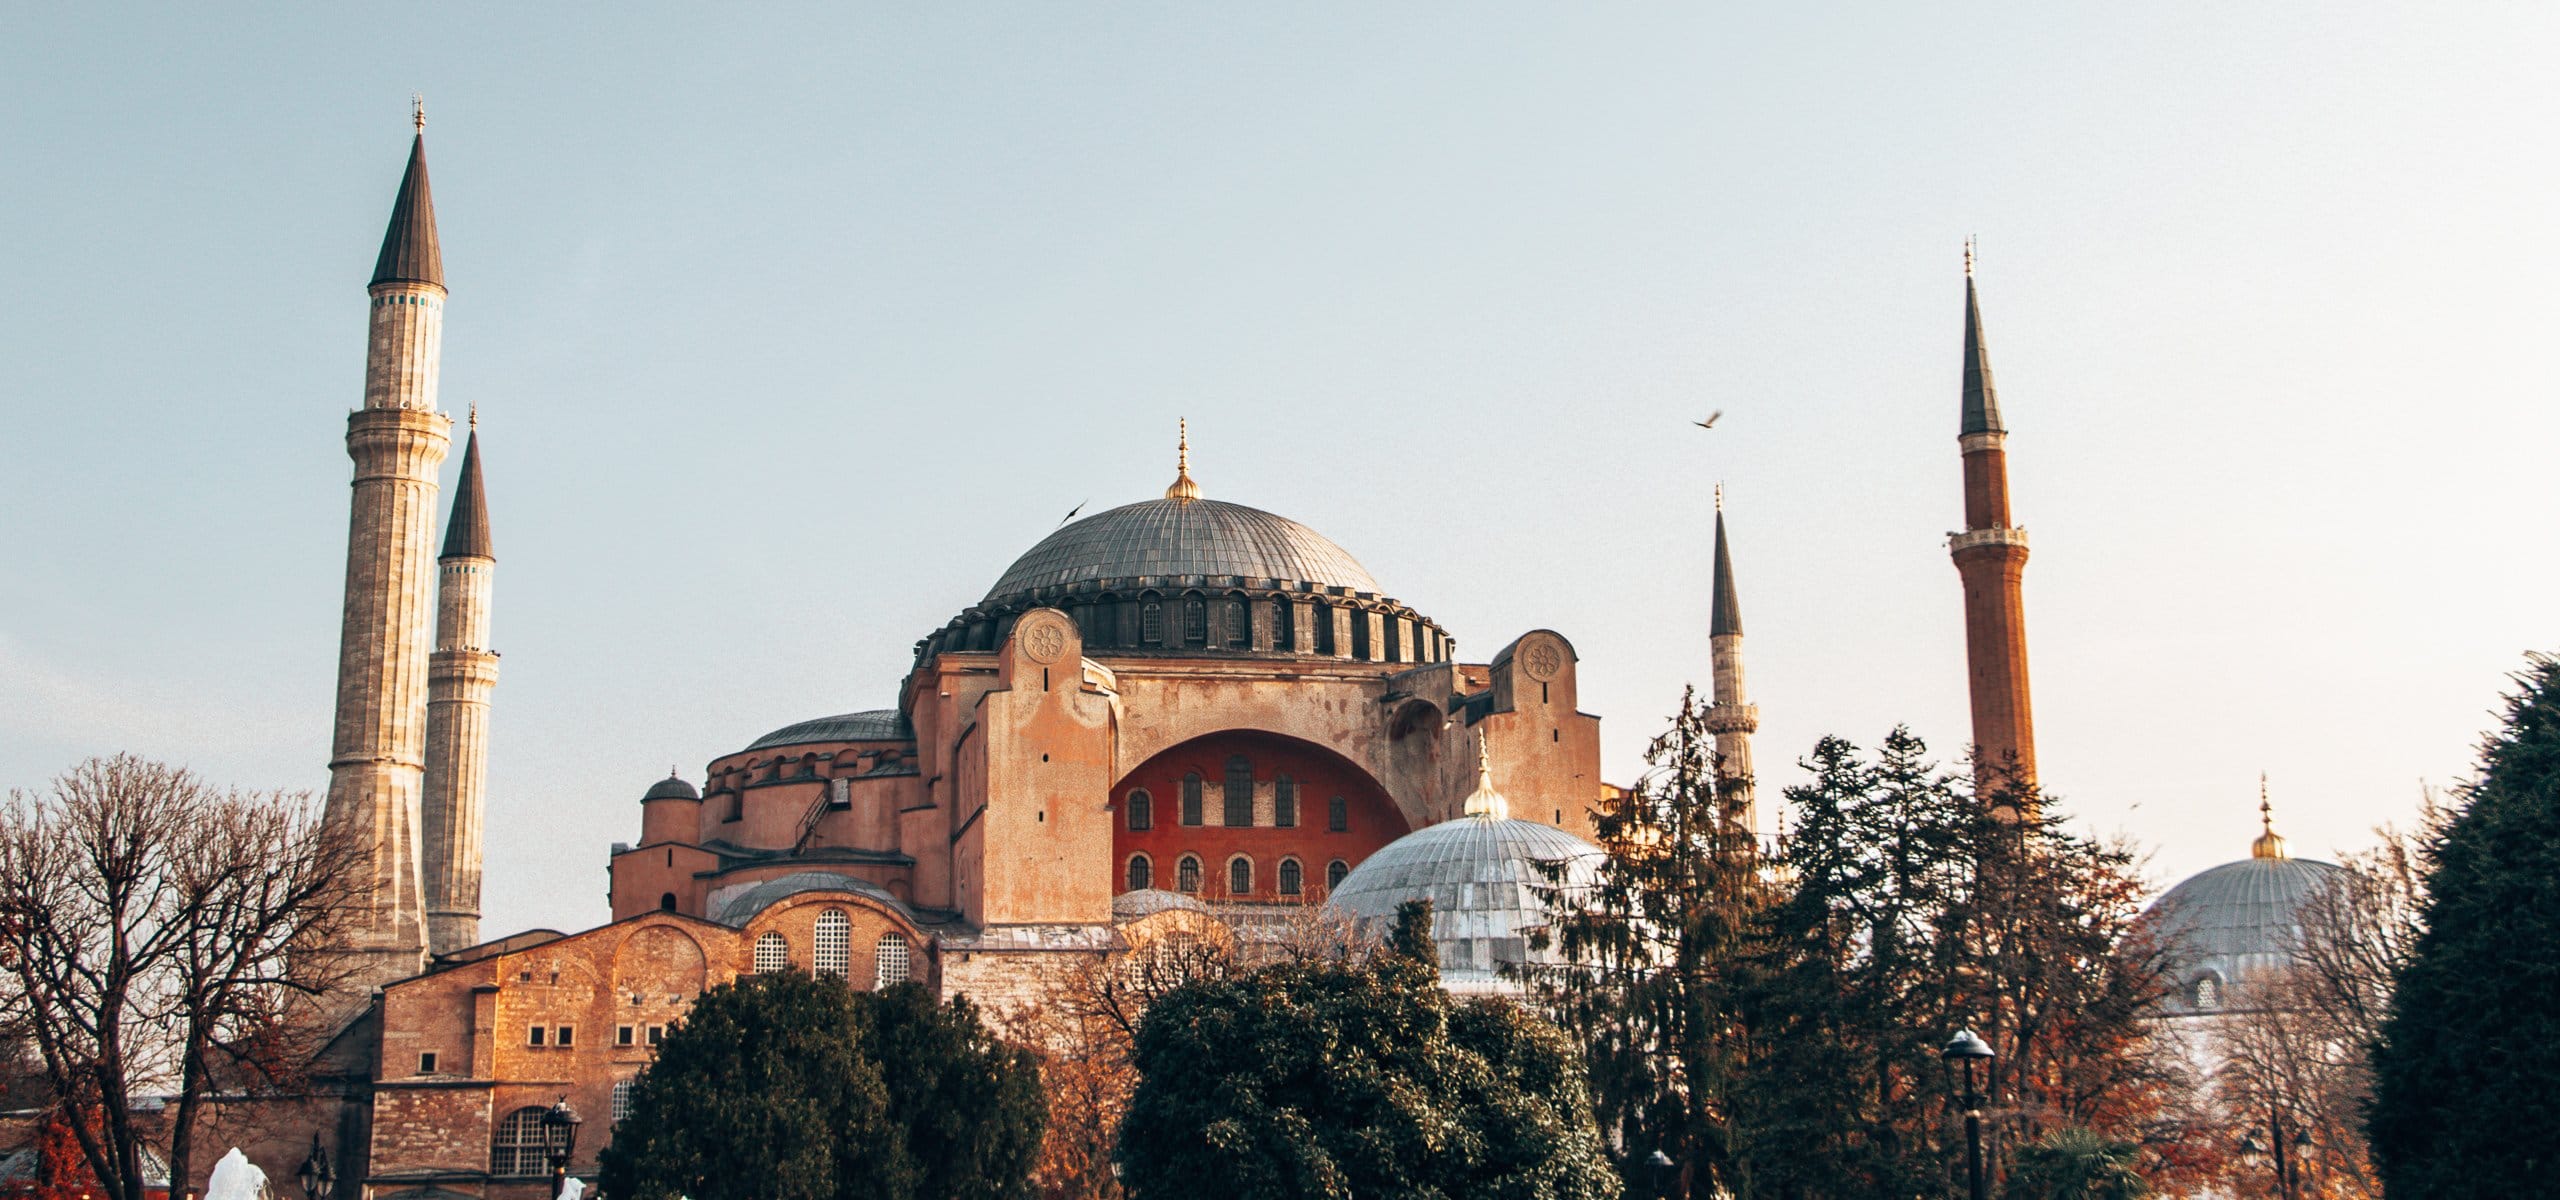 The impressive Hagia Sofia Museum in Istanbul